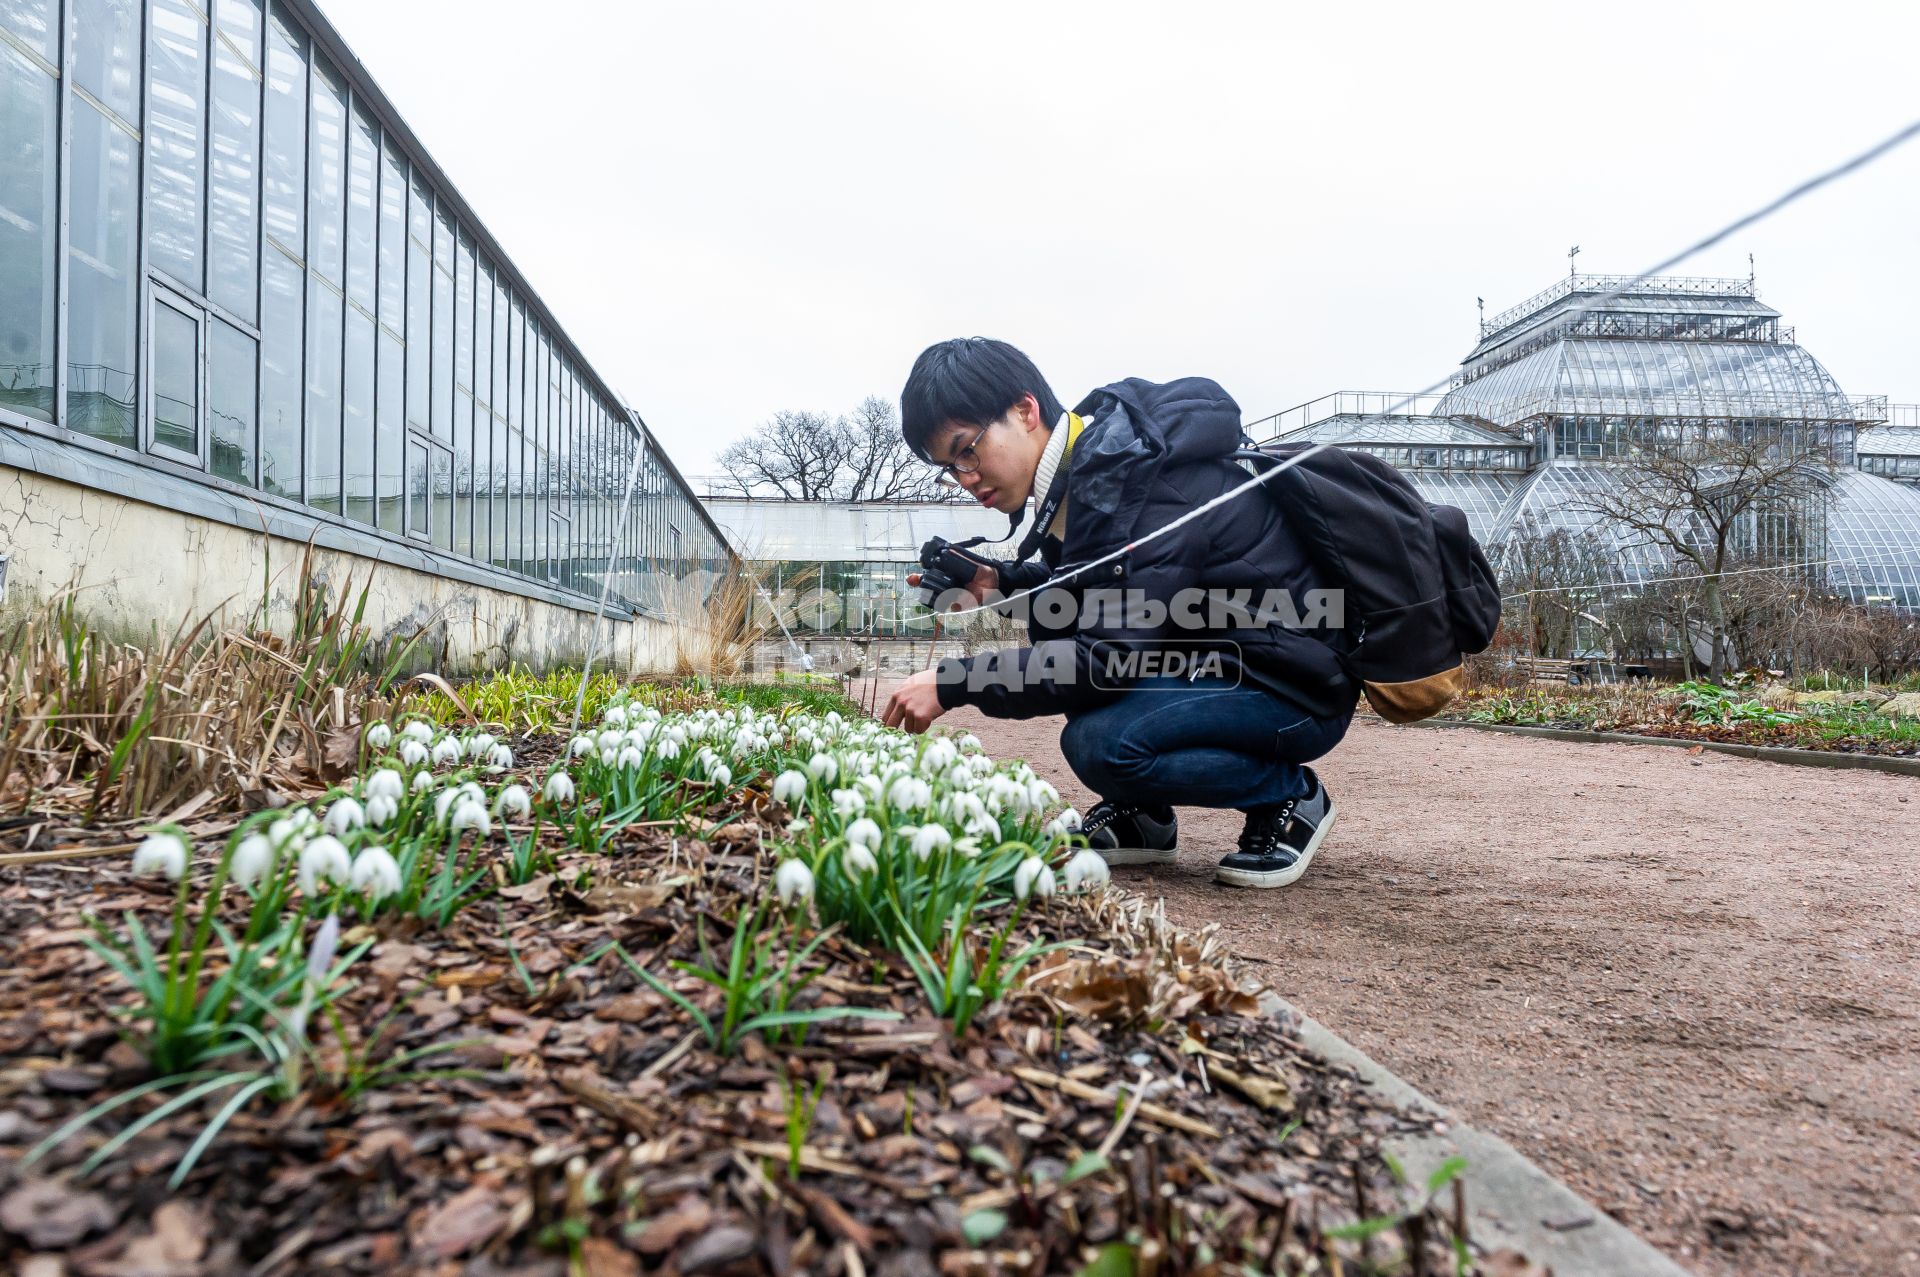 Санкт-Петербург.  Посетители фотографируют  Белоснежный подснежник   в Ботаническом саду Петра Великого.